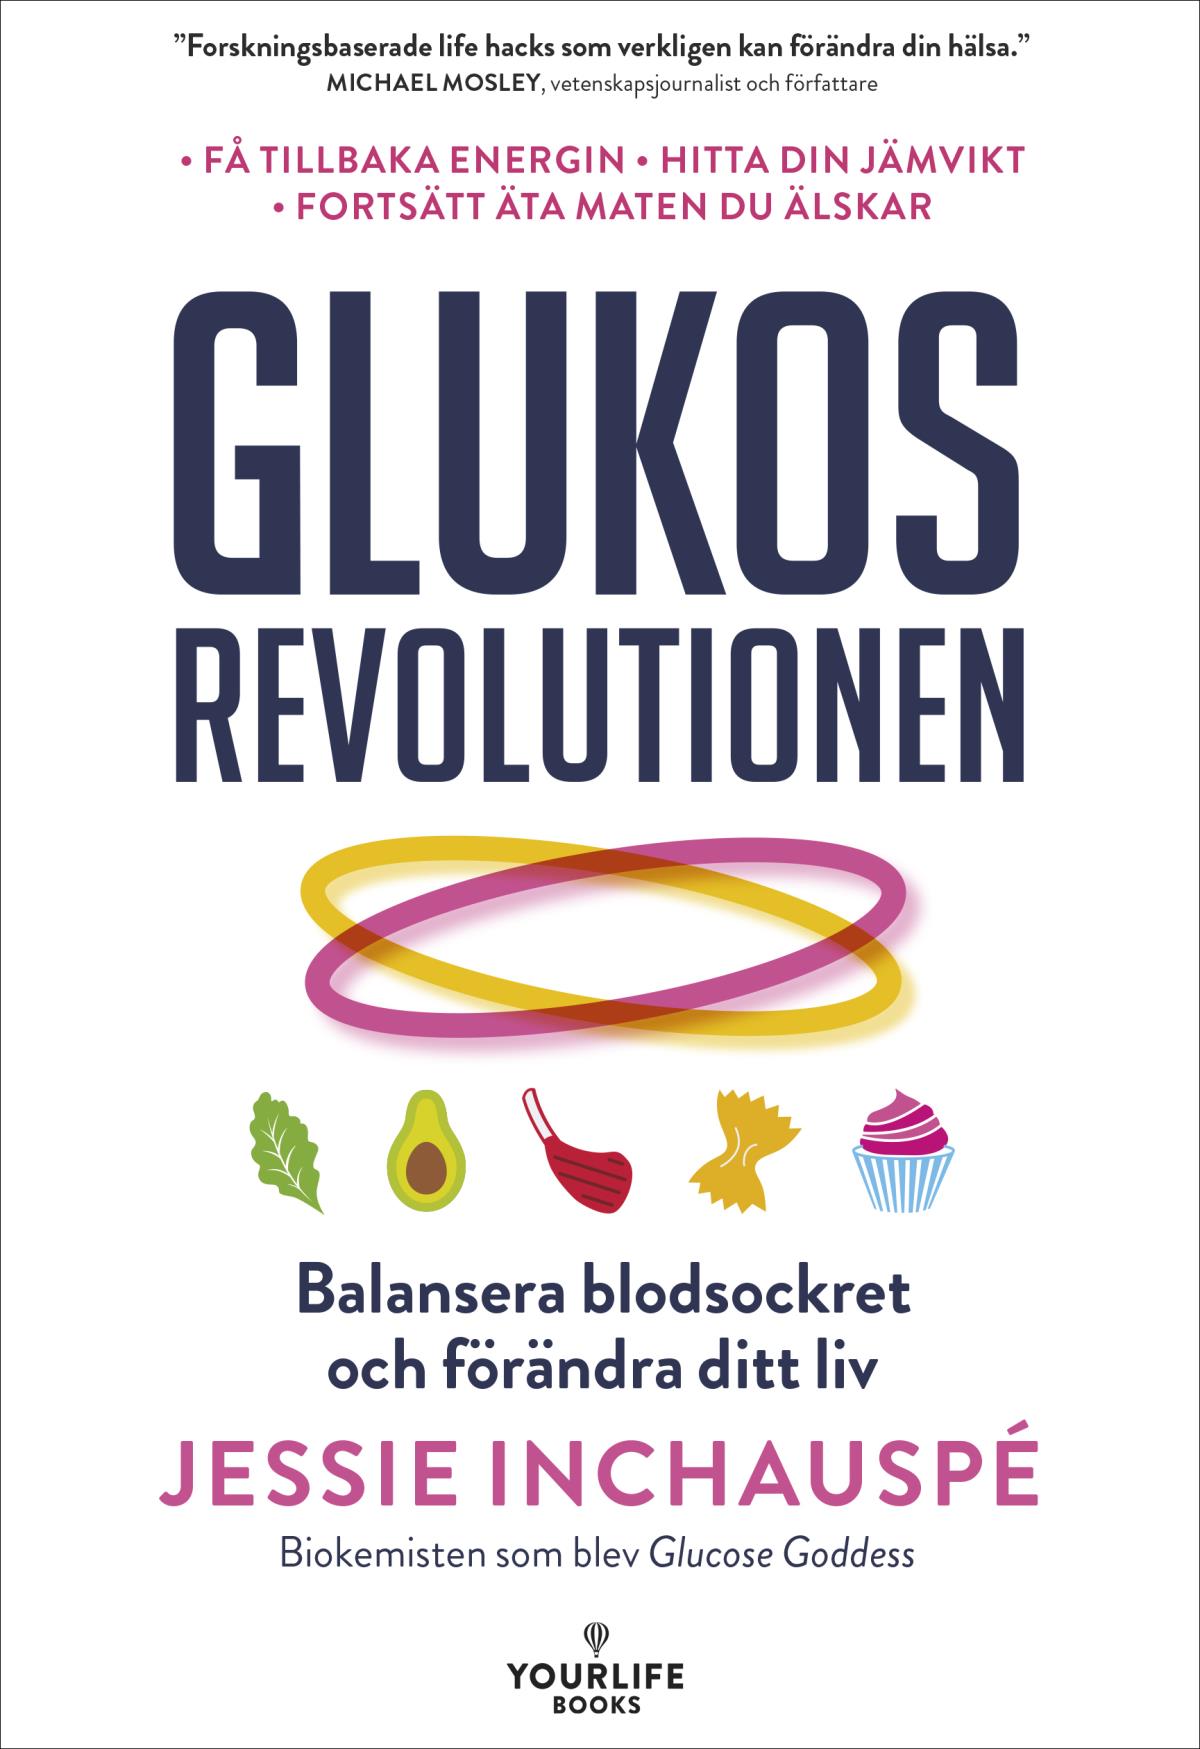 Glukosrevolutionen - Balansera Ditt Blodsocker Och Förändra Ditt Liv